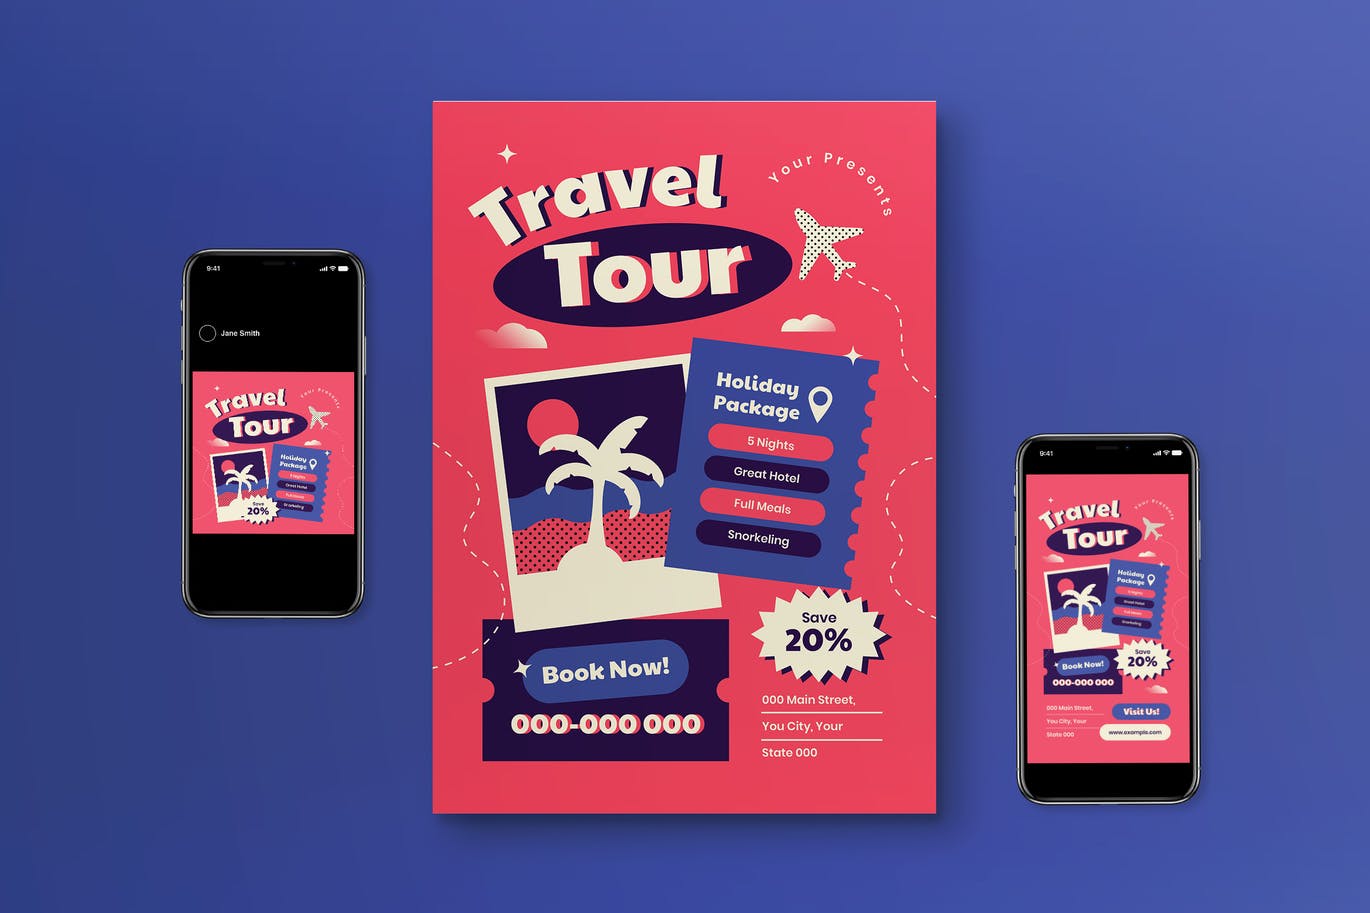 旅行团推广海报模板 Travel Tour Flyer Set 设计素材 第1张